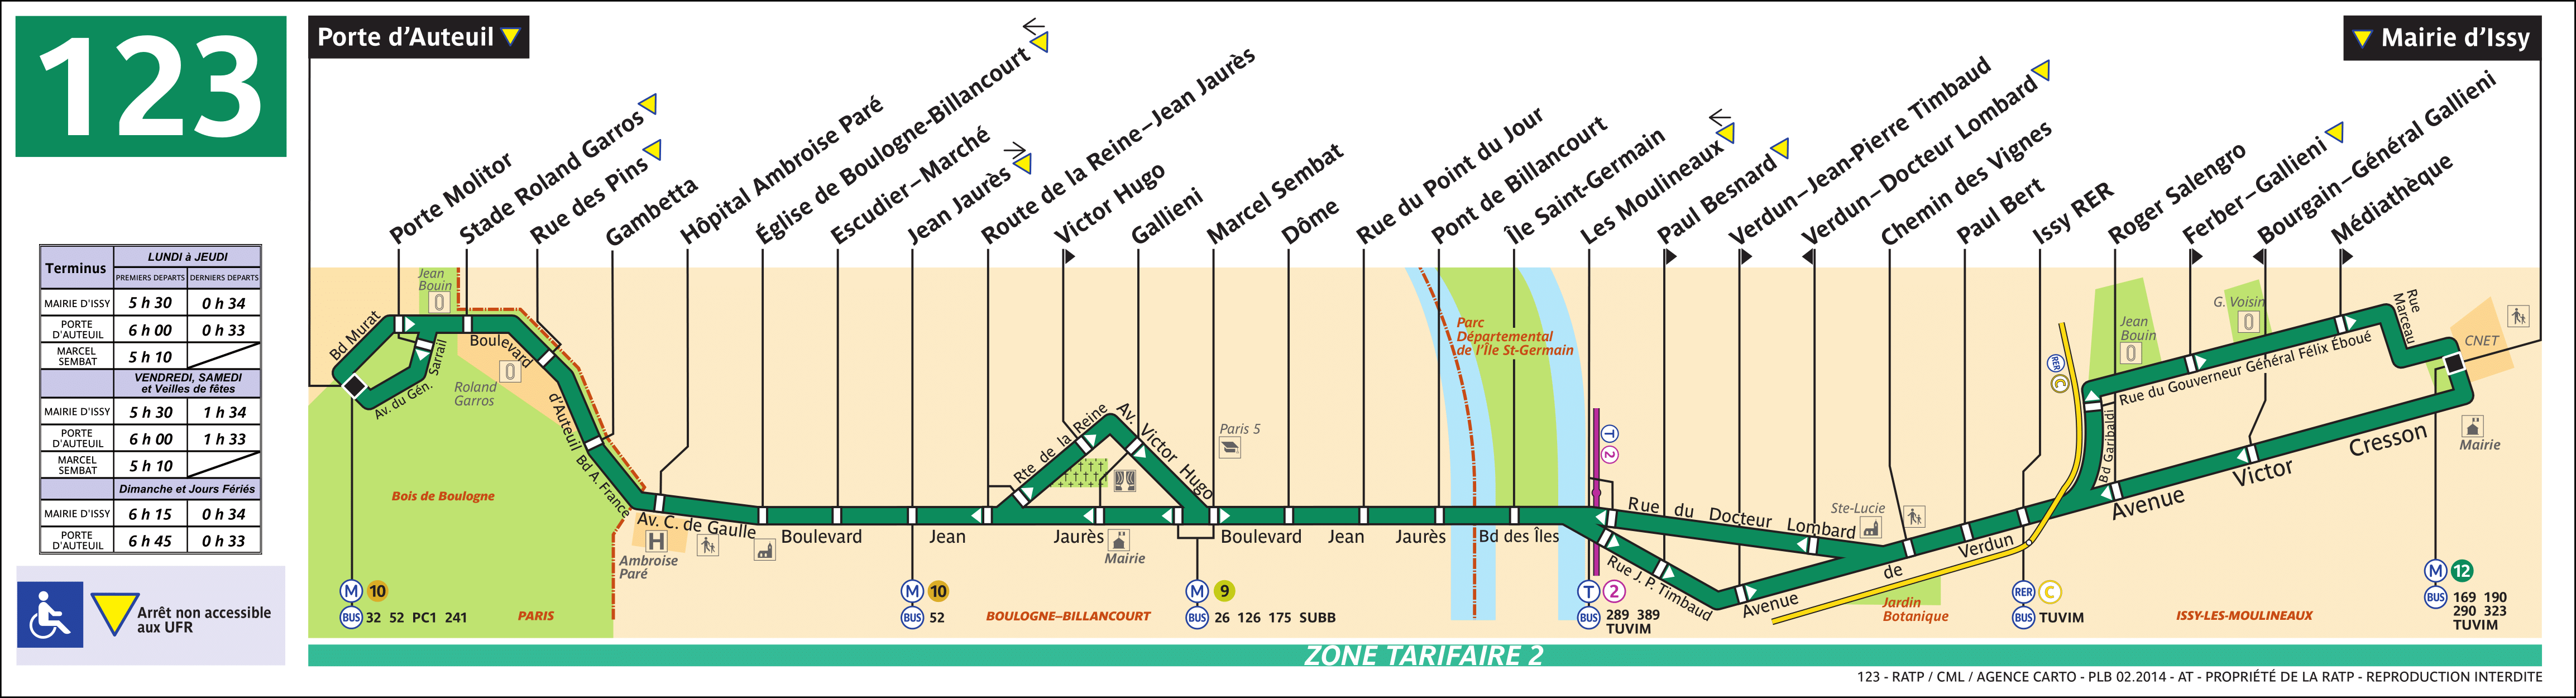 Спб маршрут 123 автобуса на карте остановки